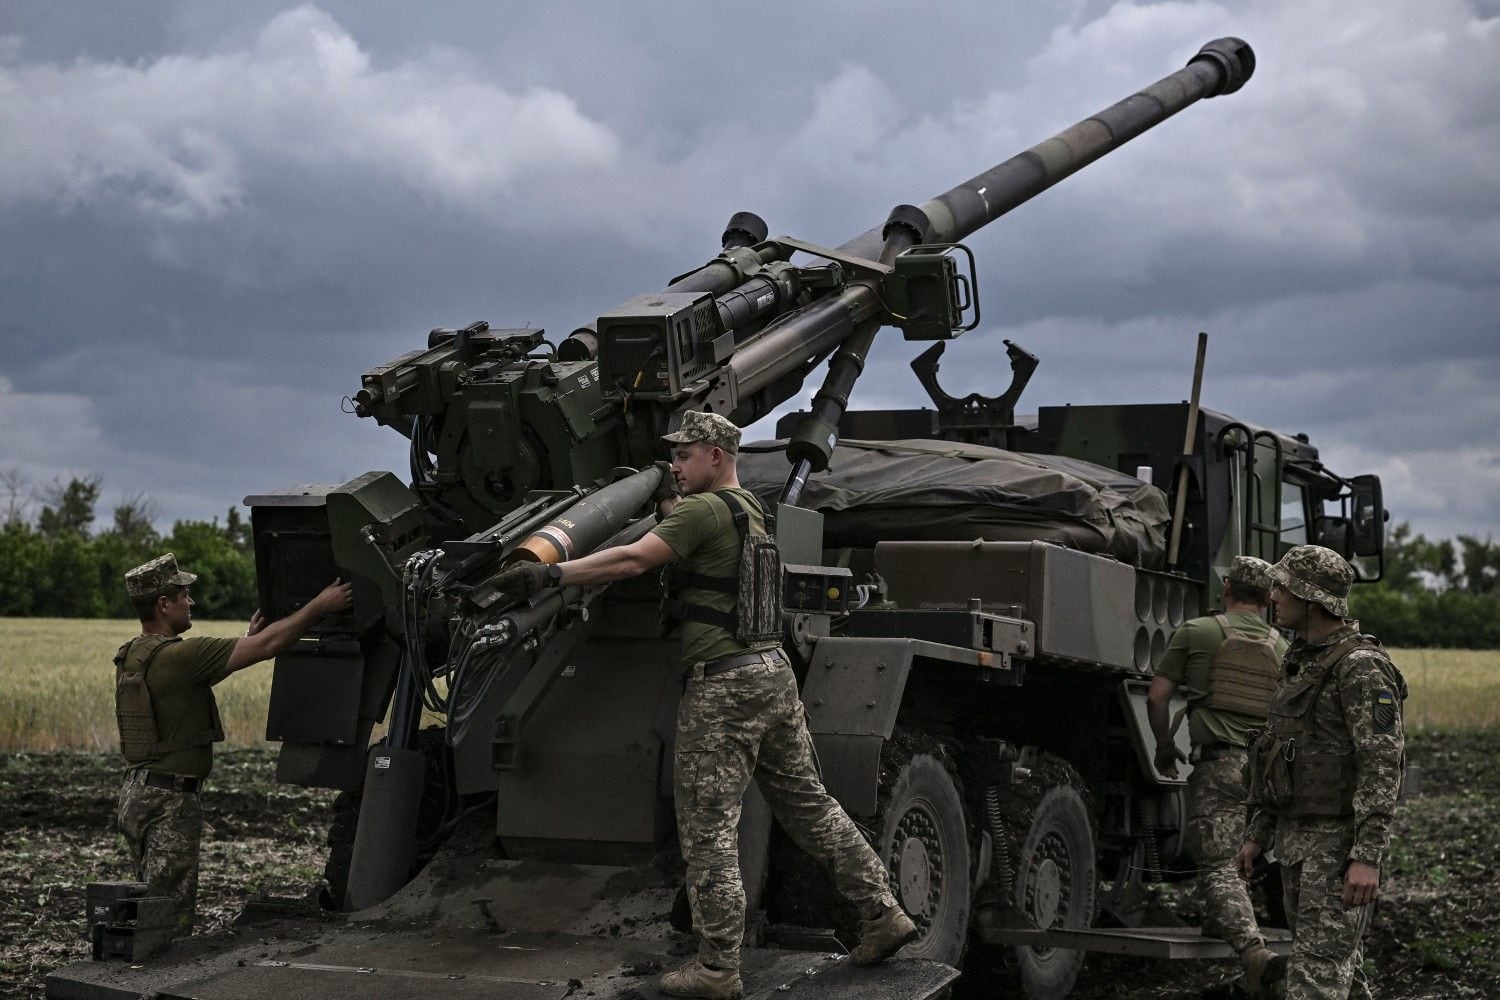 Francia va a entregar a Ucrania 6 nuevos cañones Caesar